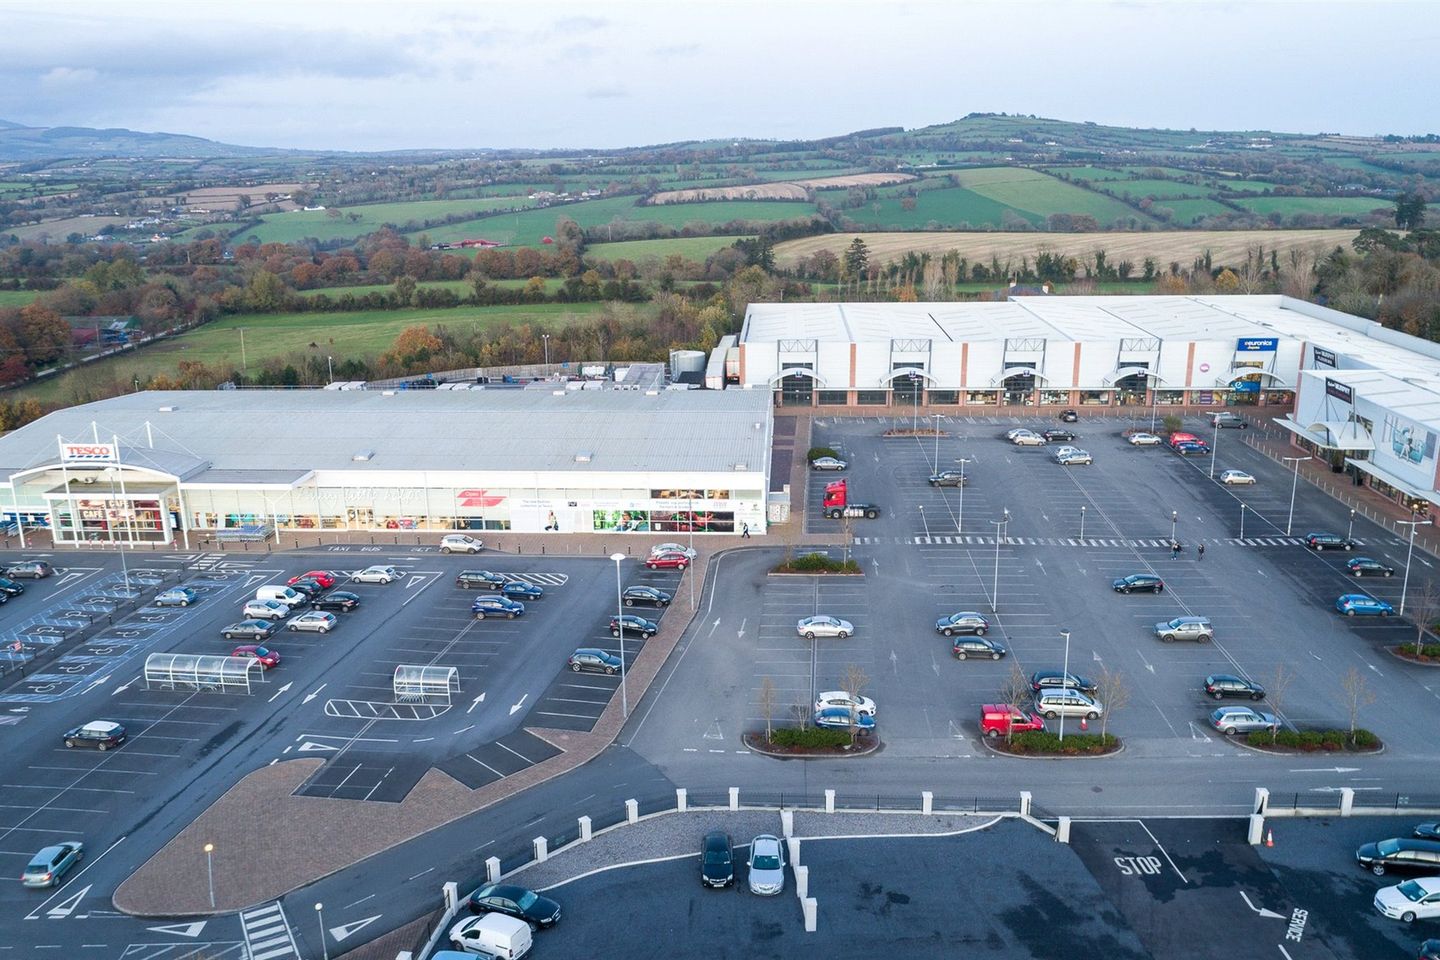 1 New Ross Retail Park, Portersland, New Ross, Co. Wexford